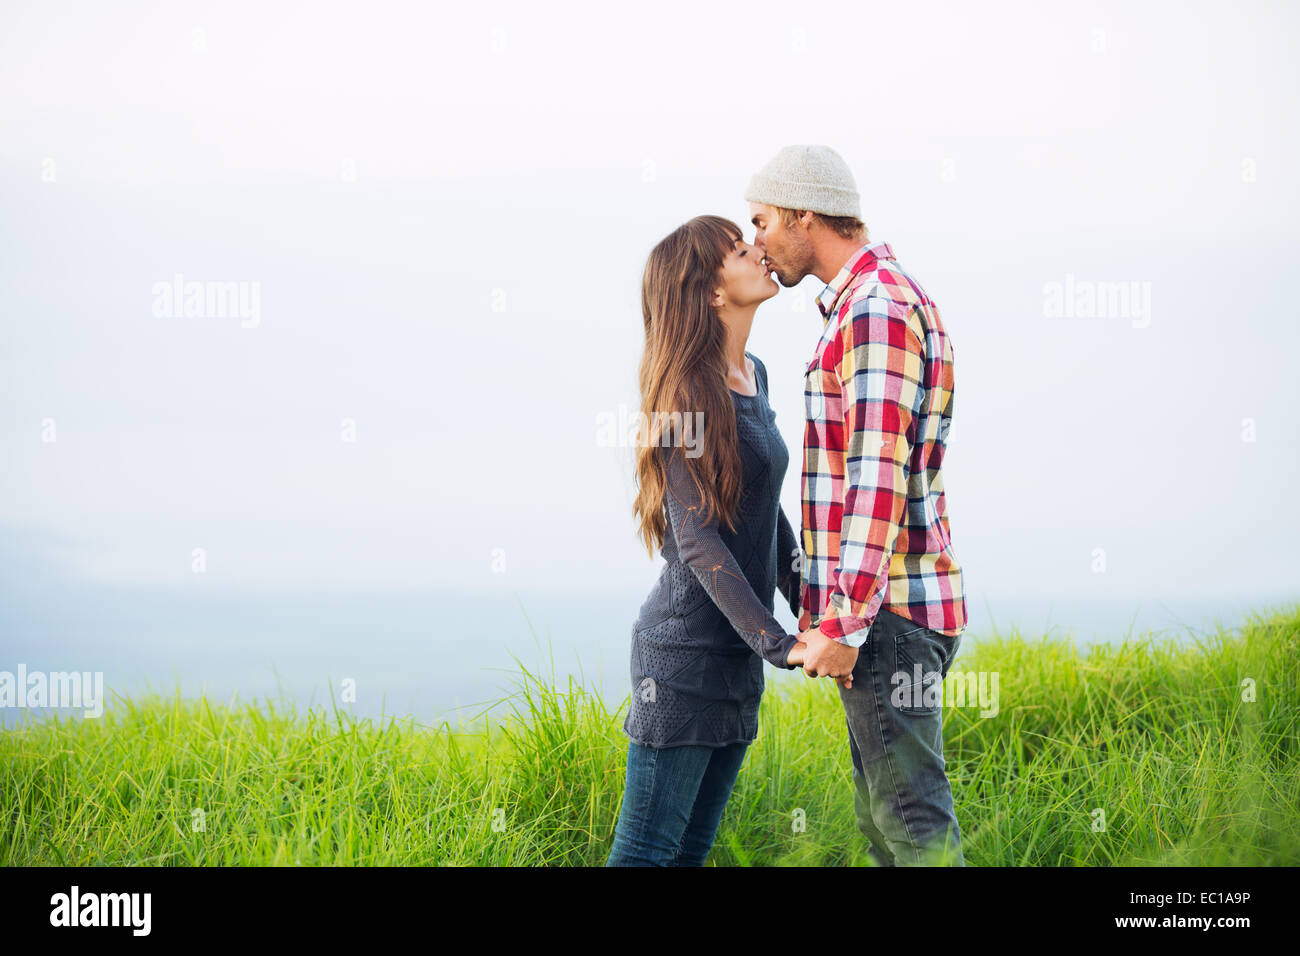 Jeune couple romantique dans l'amour en plein air Banque D'Images